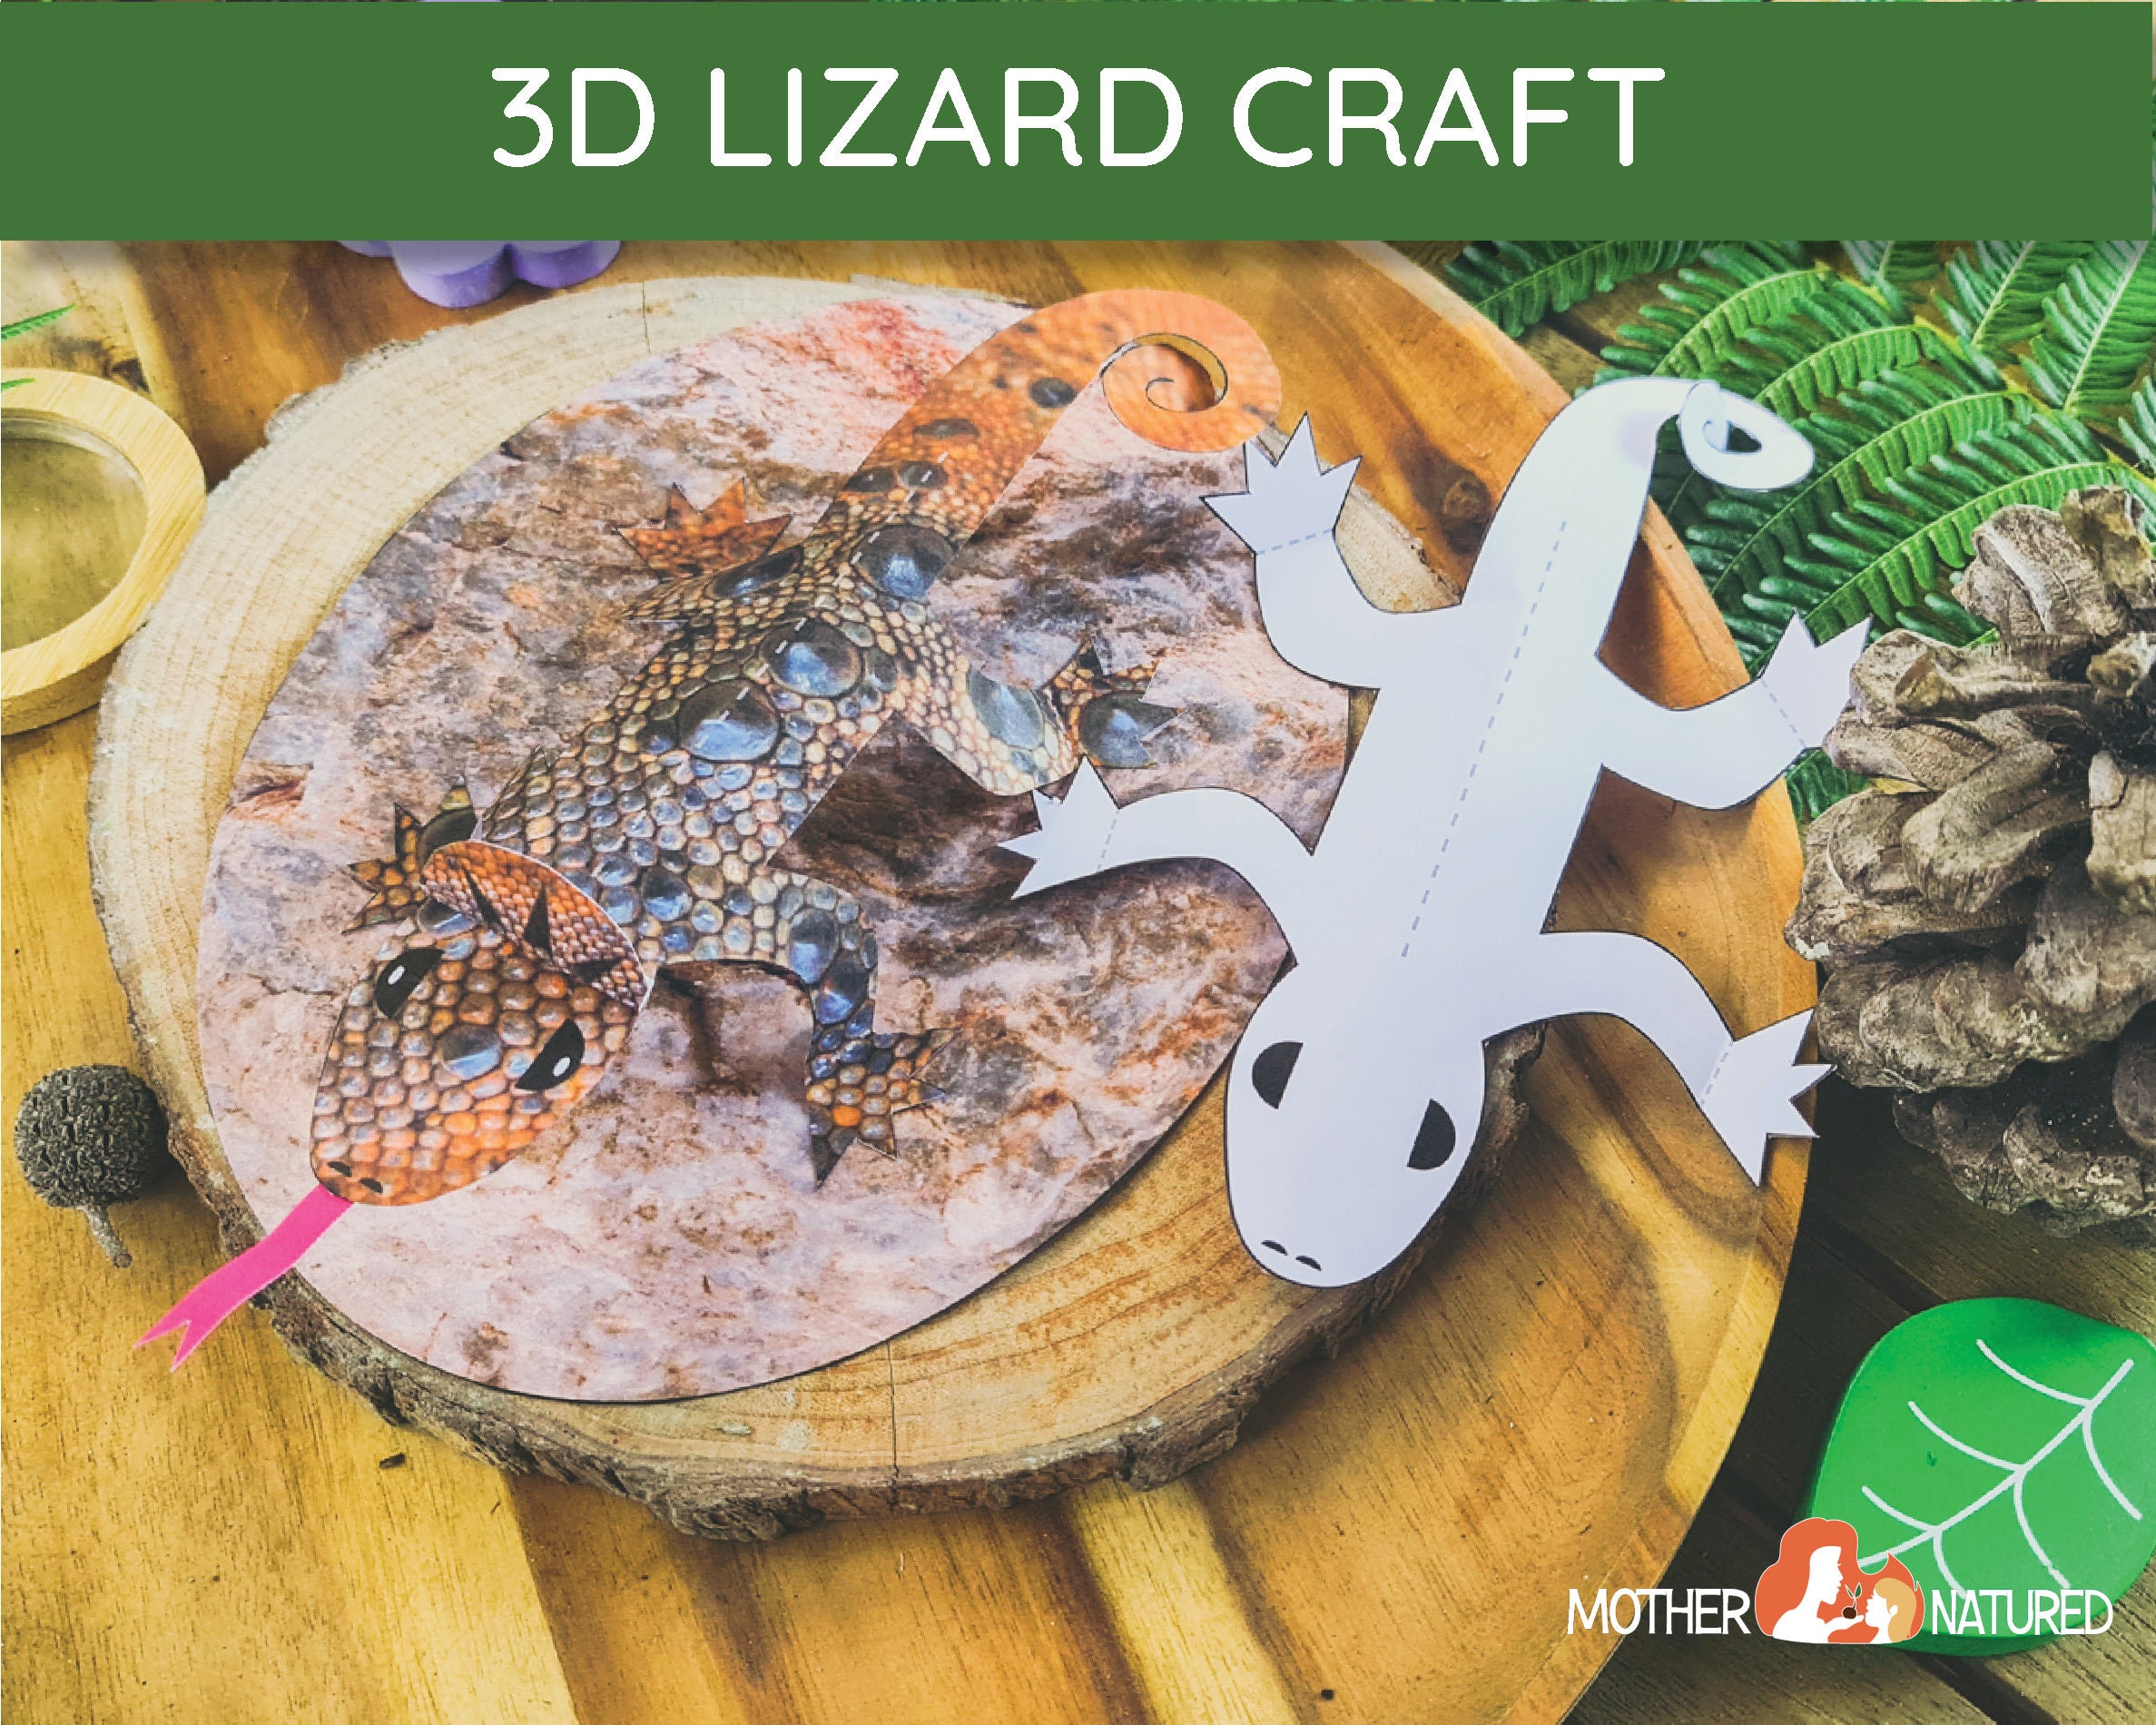 3D Lizard Craft Lizard Activity Lizard Craft for Kids Lizard